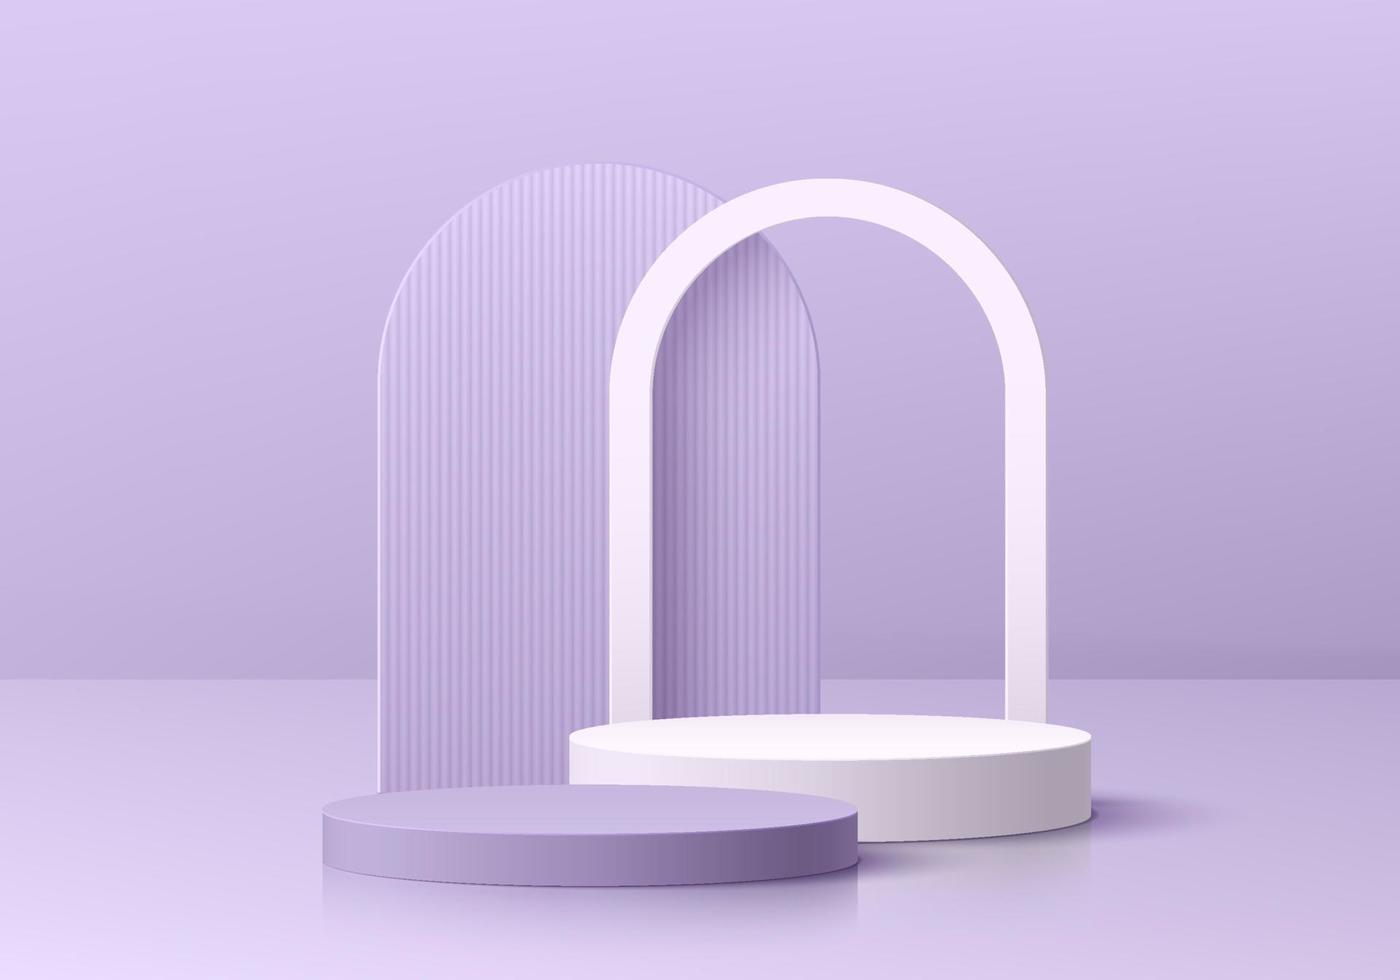 podium de piédestal de cylindre 3d violet et blanc réaliste avec fond en forme d'arche. scène minimale pour les produits de maquette, scène ronde pour vitrine, affichage promotionnel. formes géométriques vectorielles. chambre abstraite. vecteur